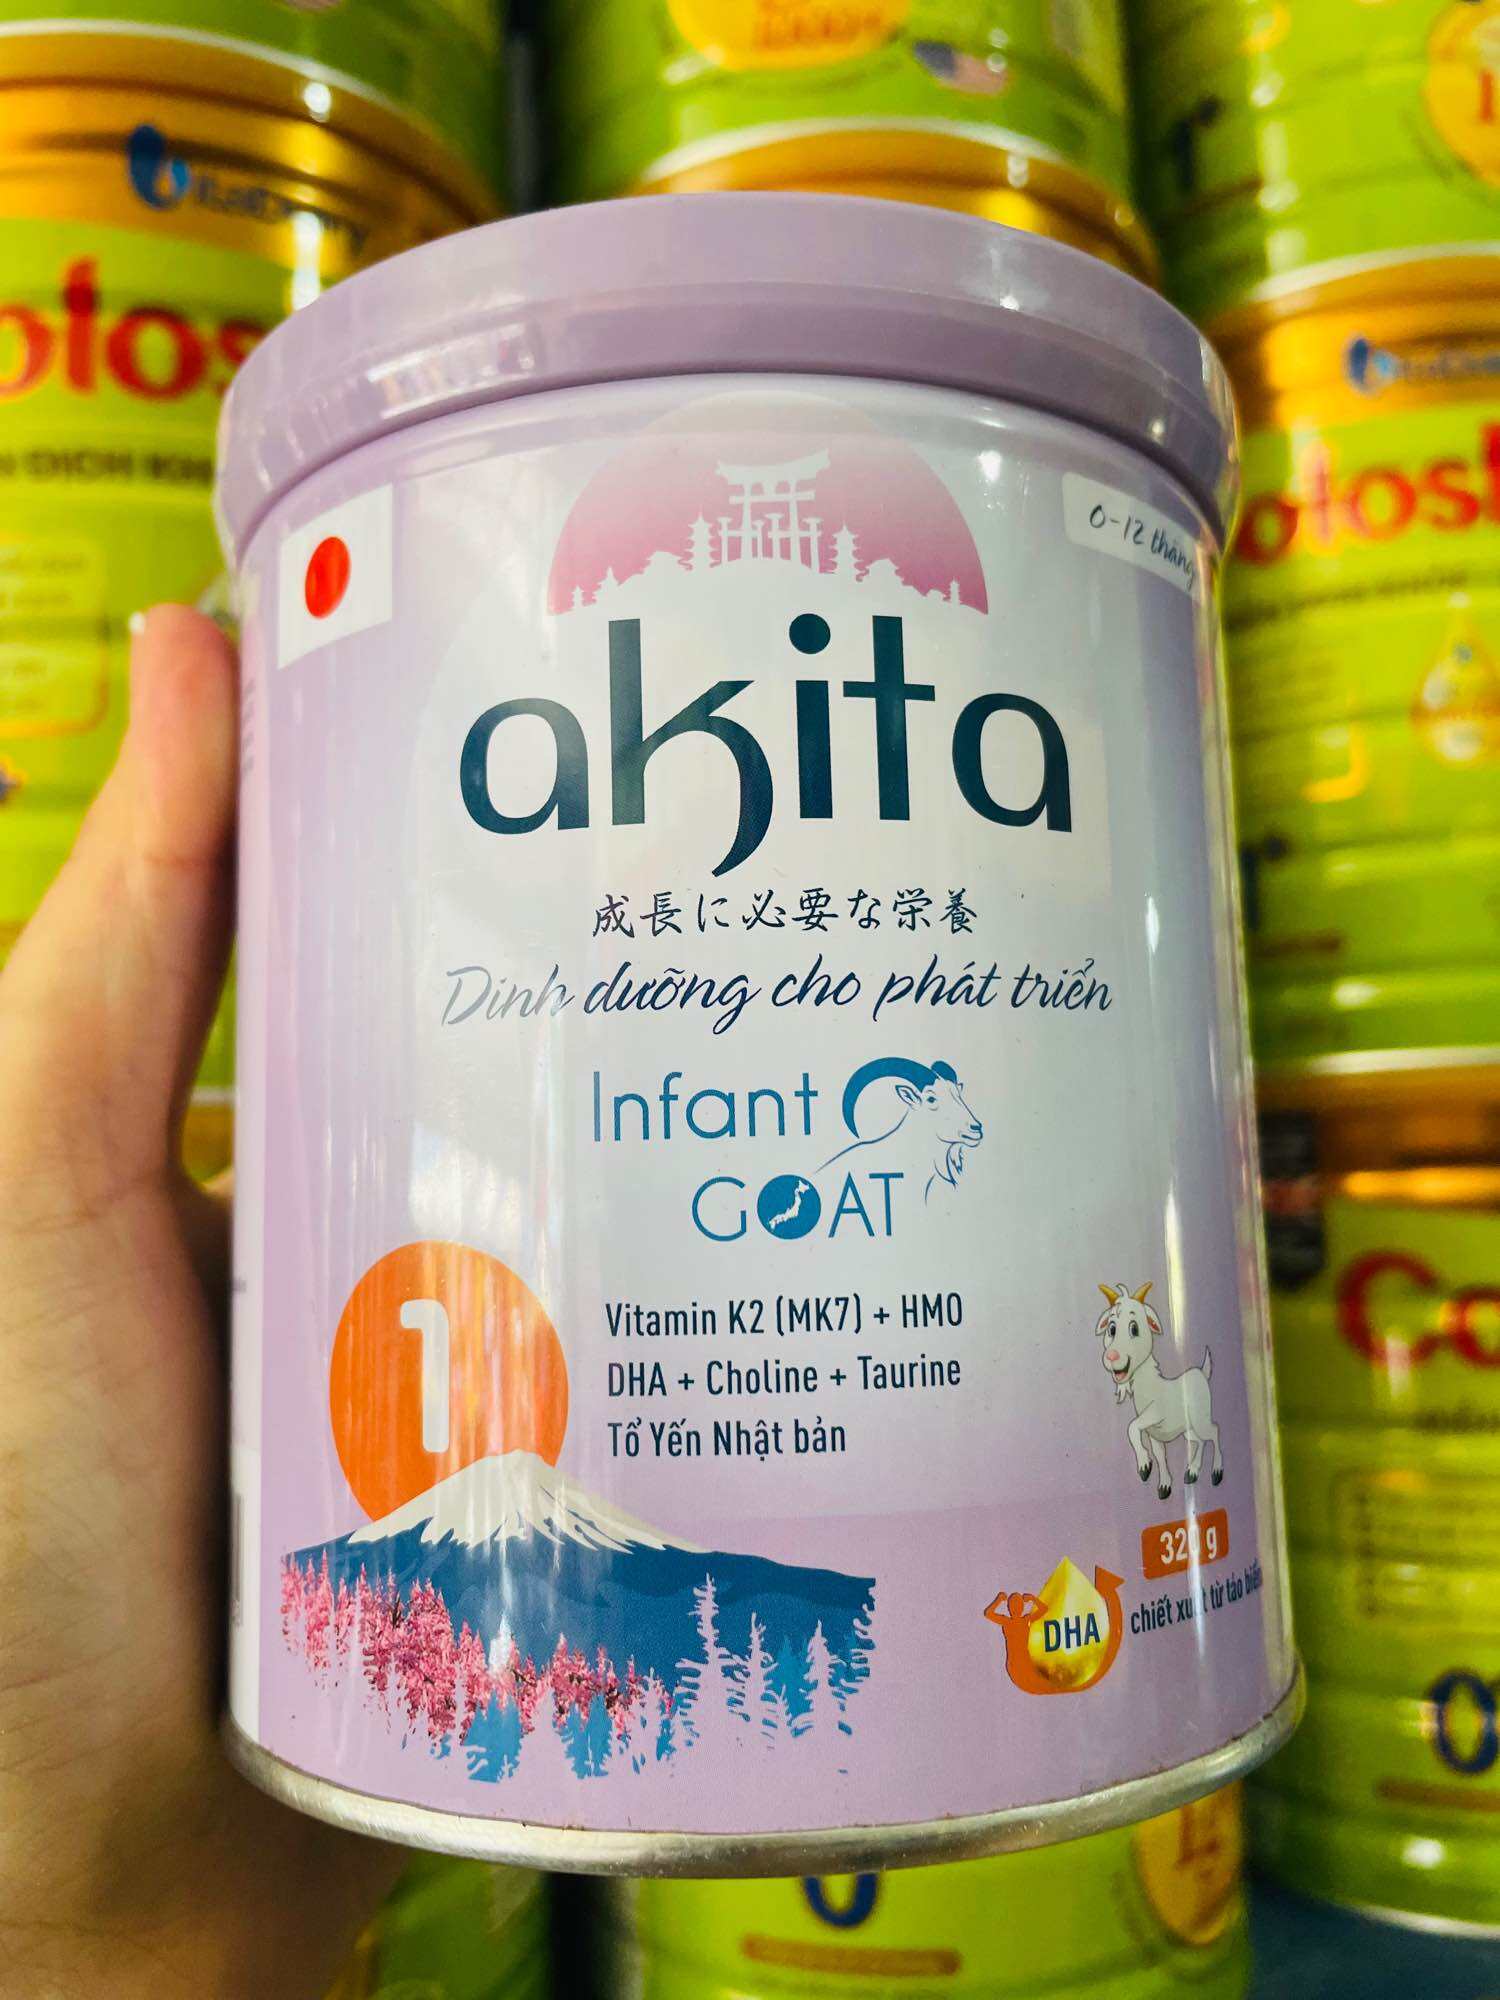 Sữa Dê Akita Infant Goat 1 Dinh dưỡng cho phát triển 0-12 Tháng -320g